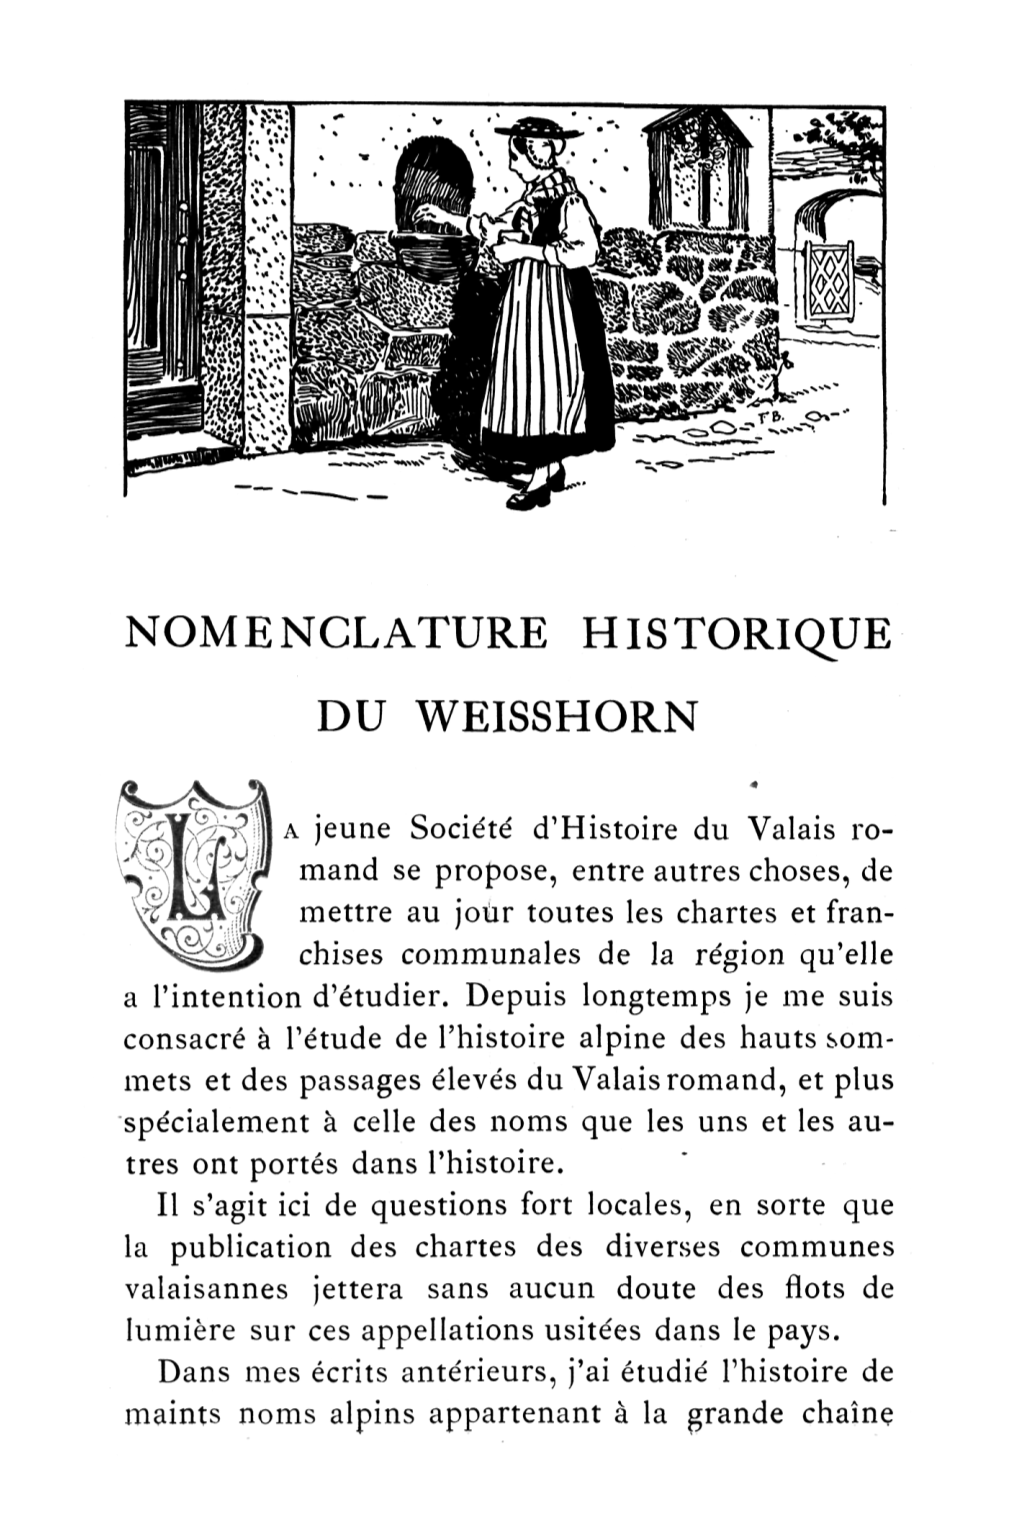 Nomenclature Historique Du Weisshorn